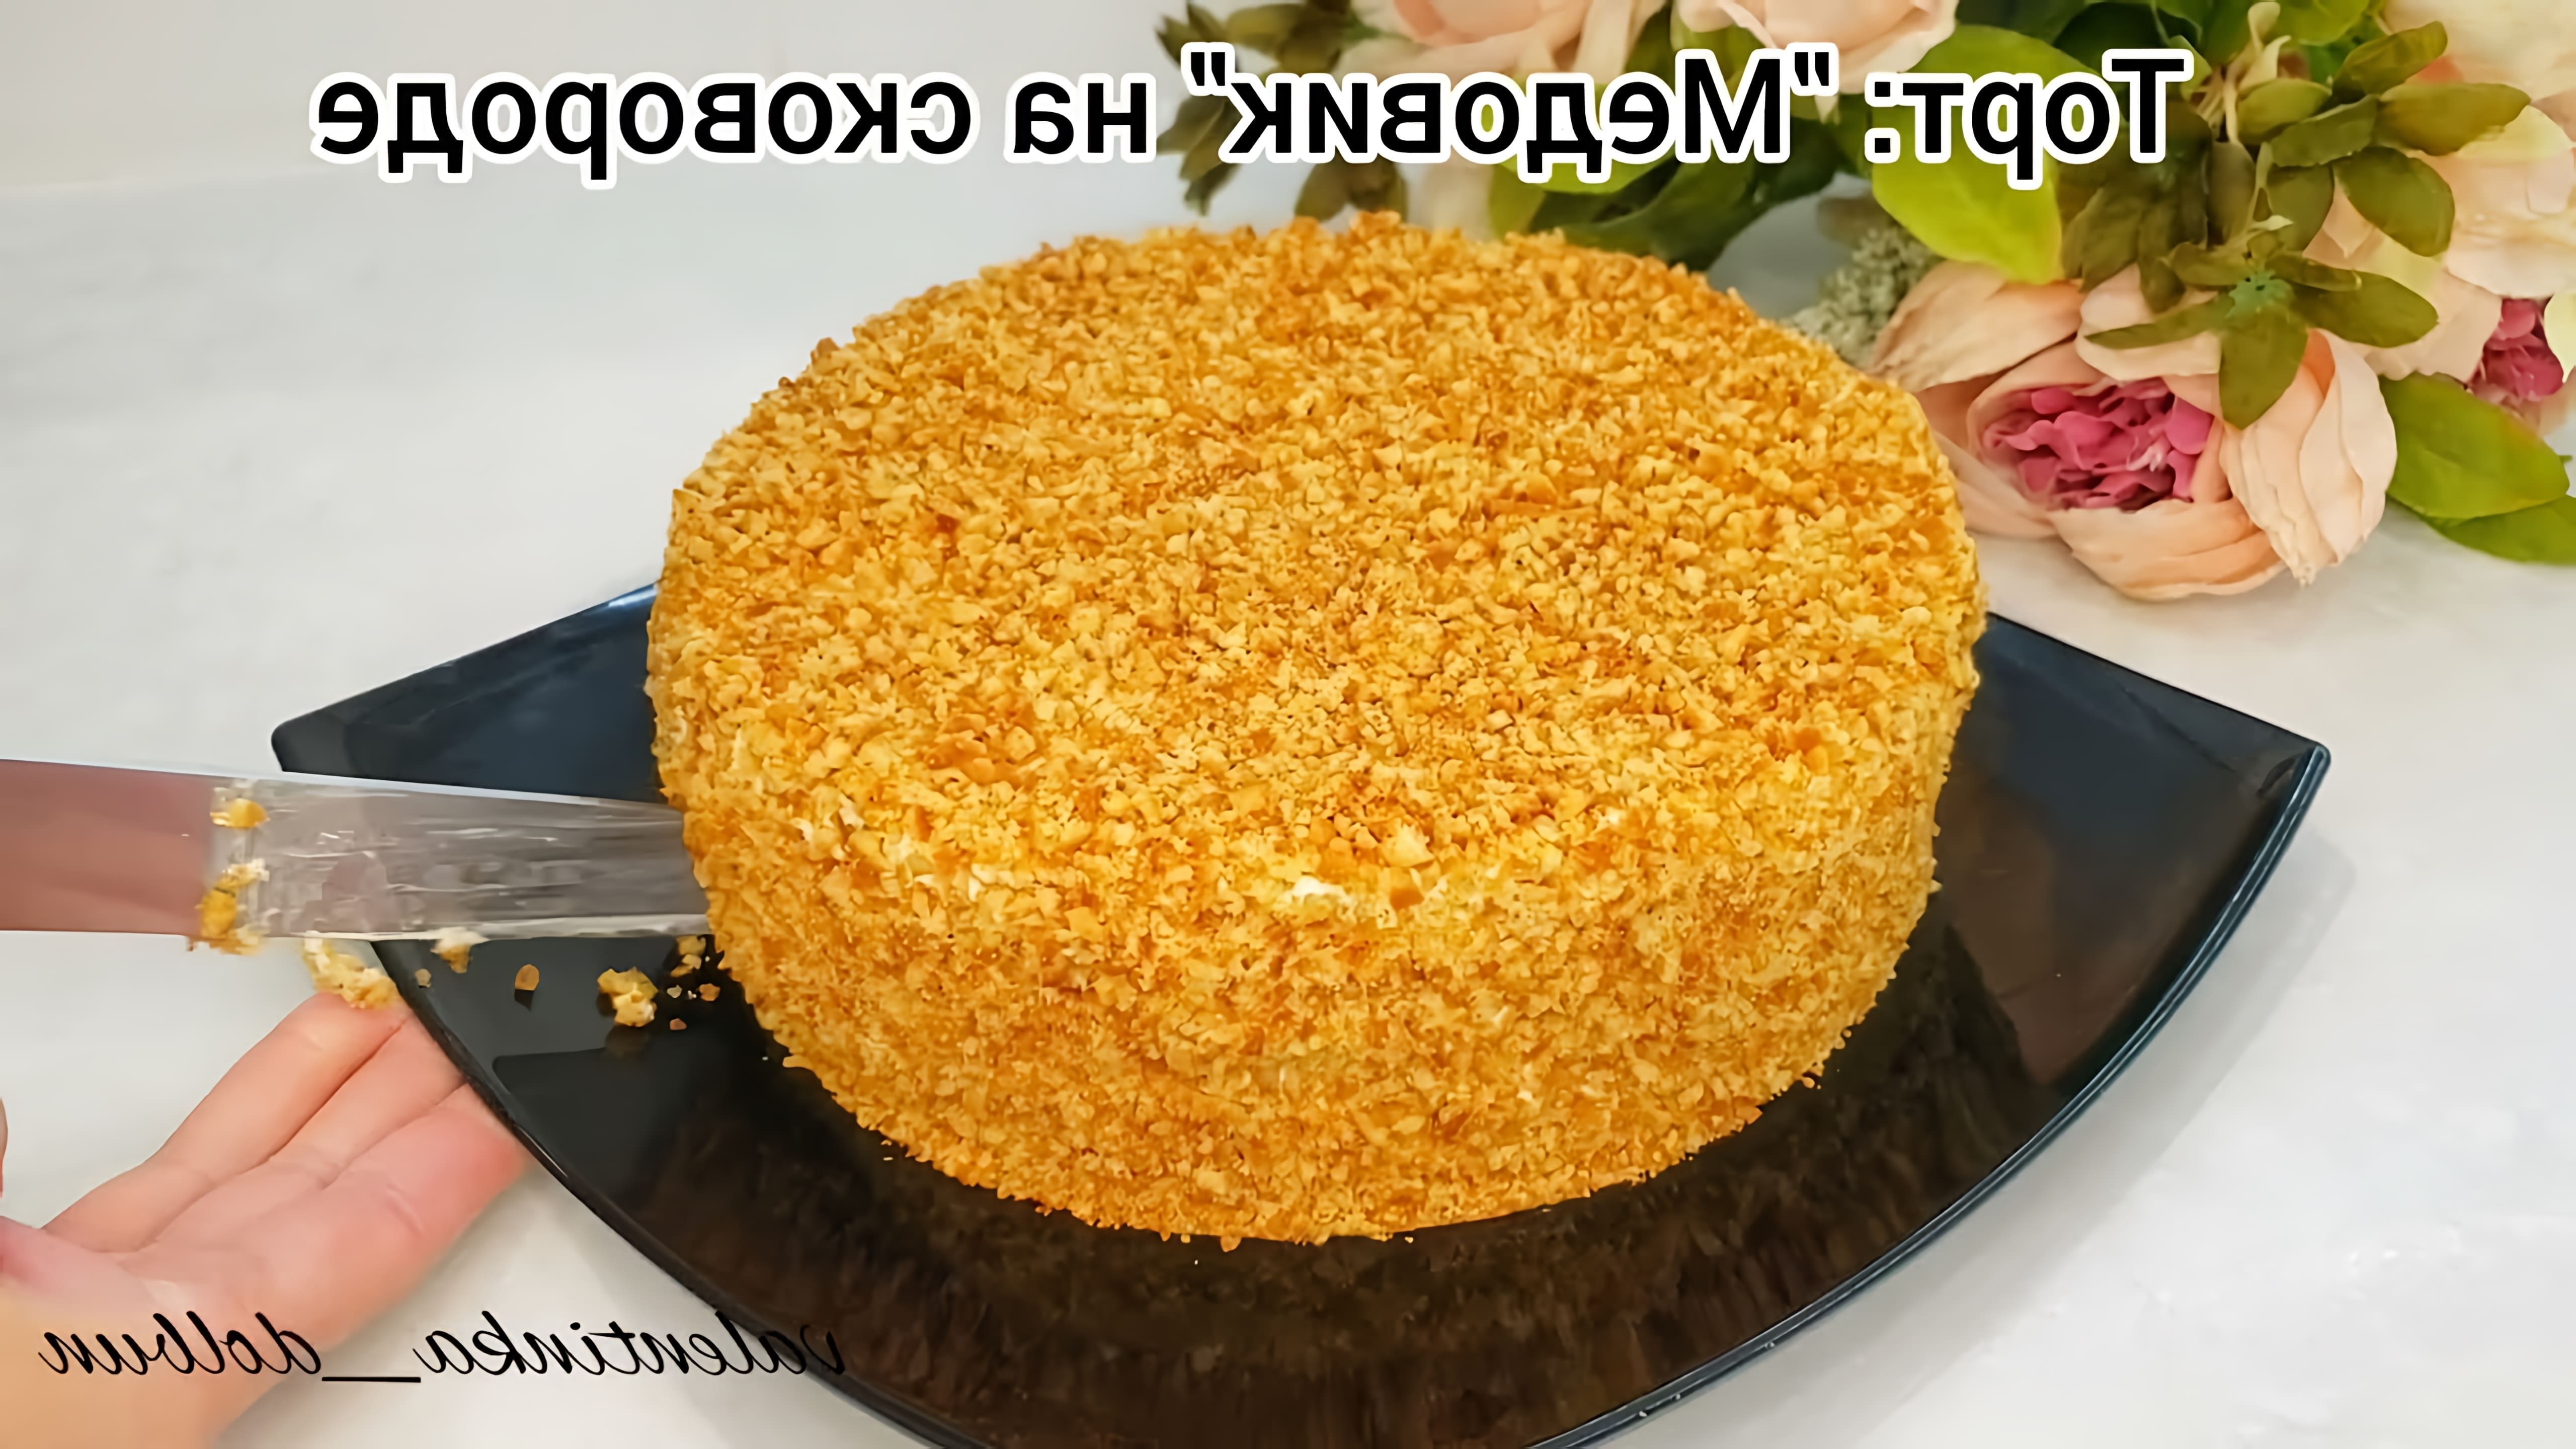 В этом видео демонстрируется рецепт приготовления торта "Медовик" на сковороде